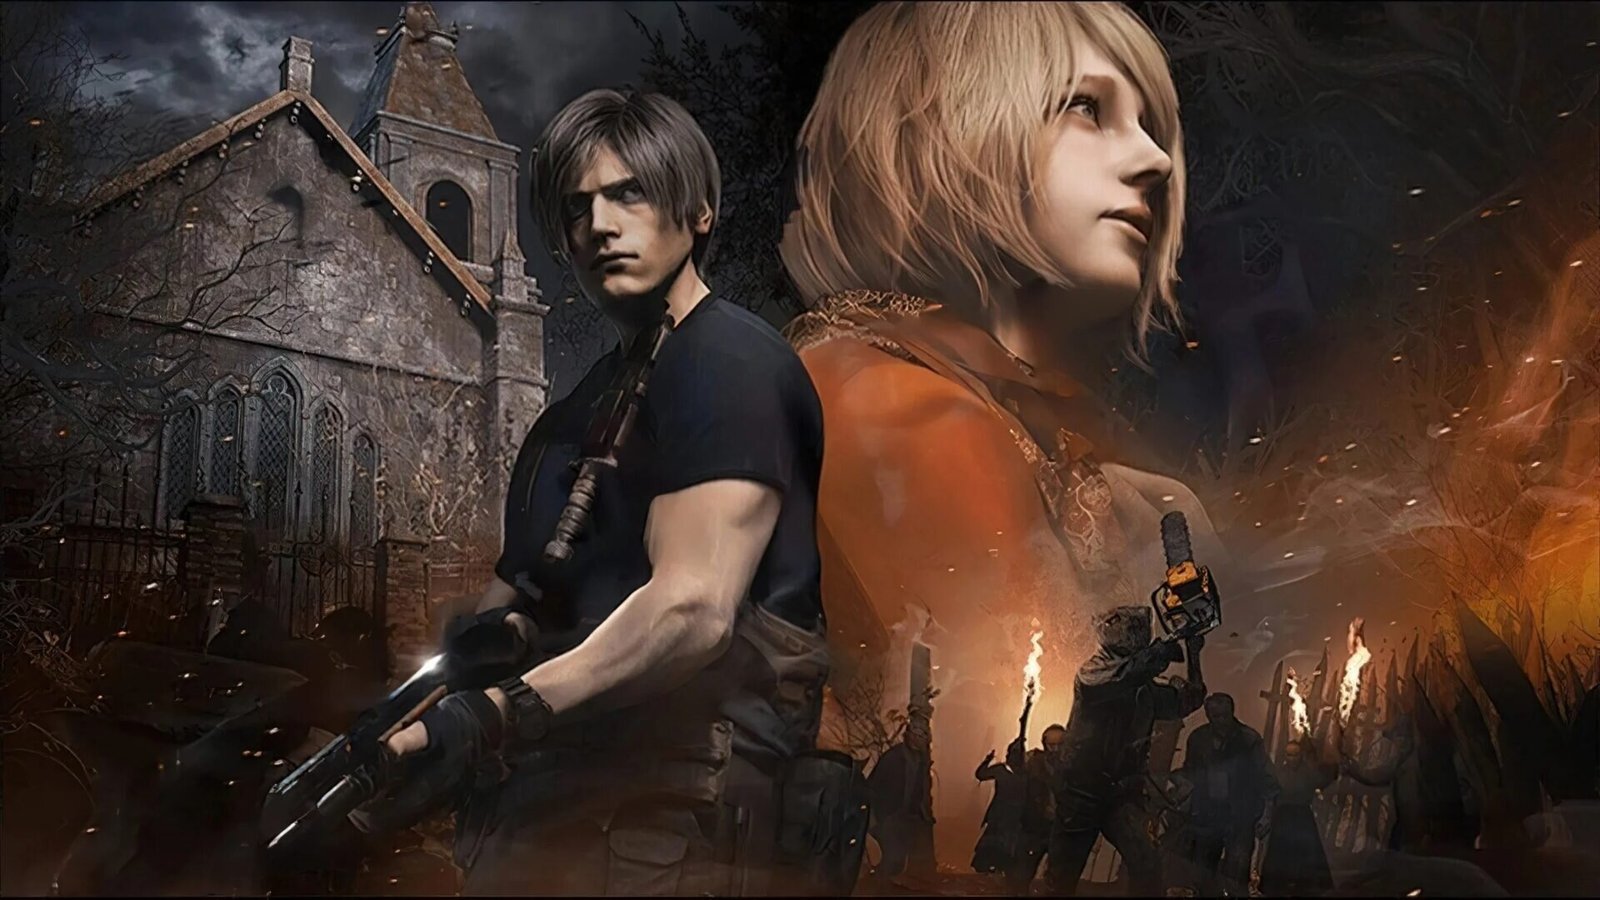 Resident Evil 4 Remake: Como alinhar as luzes e fazer o puzzle da Igreja? -  Millenium